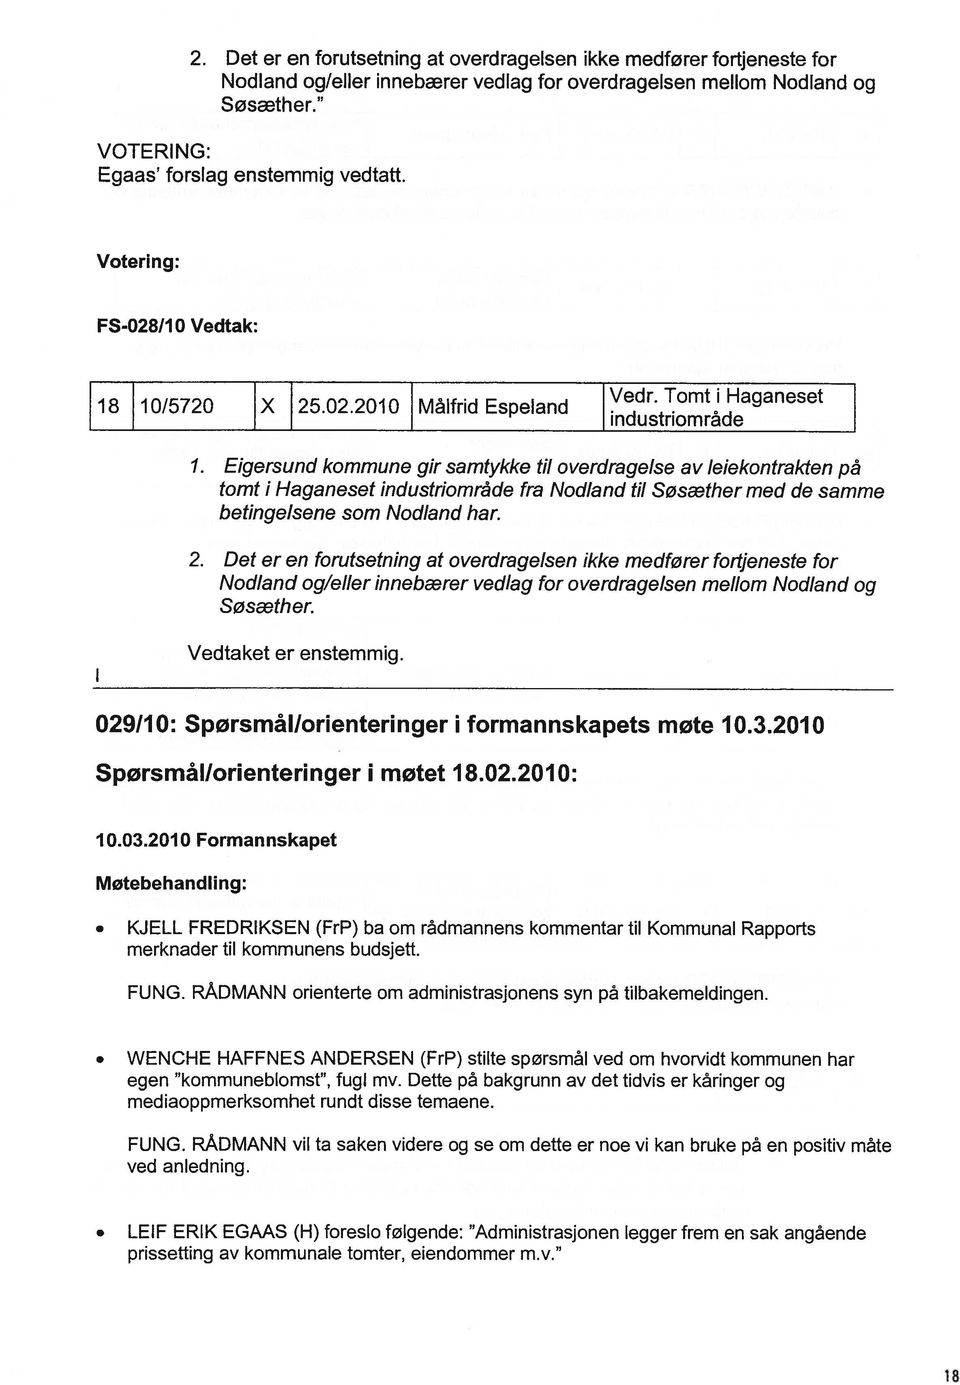 Eigersund kommune gir samtykke til overdragelse av leiekontrakten på tomt i Haganeset industriområde fra Nodland til Søsæther med de samme betingelsene som Nodland har. 2.